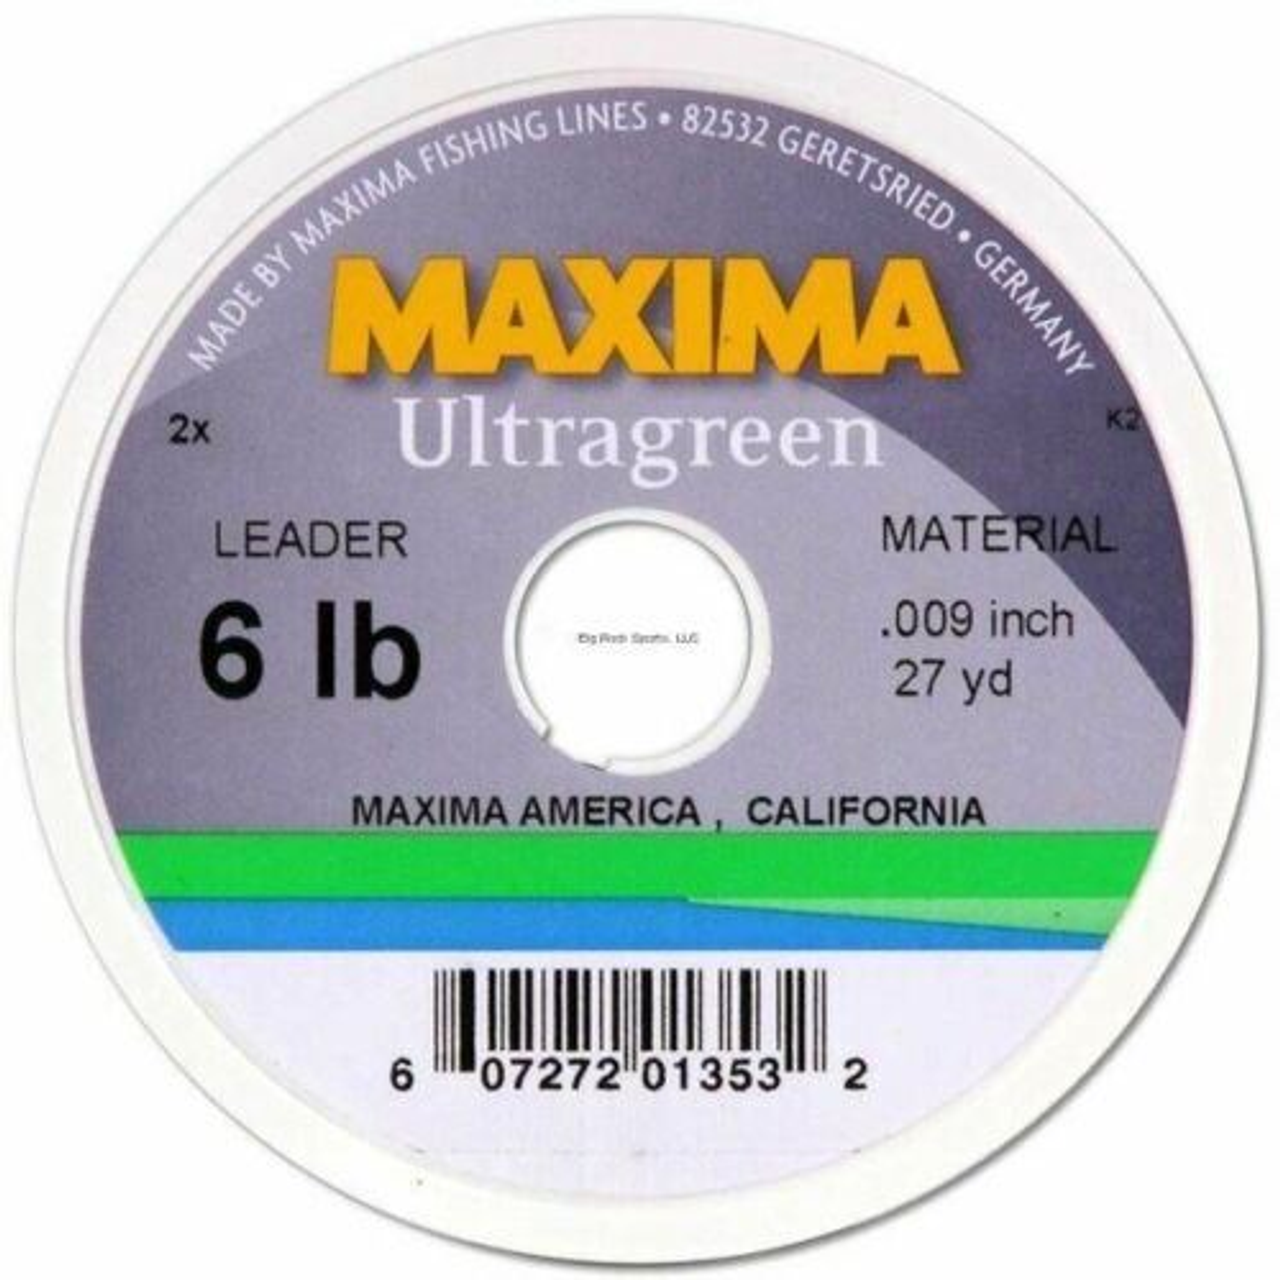 Maxima Leader 8lb Ultragreen